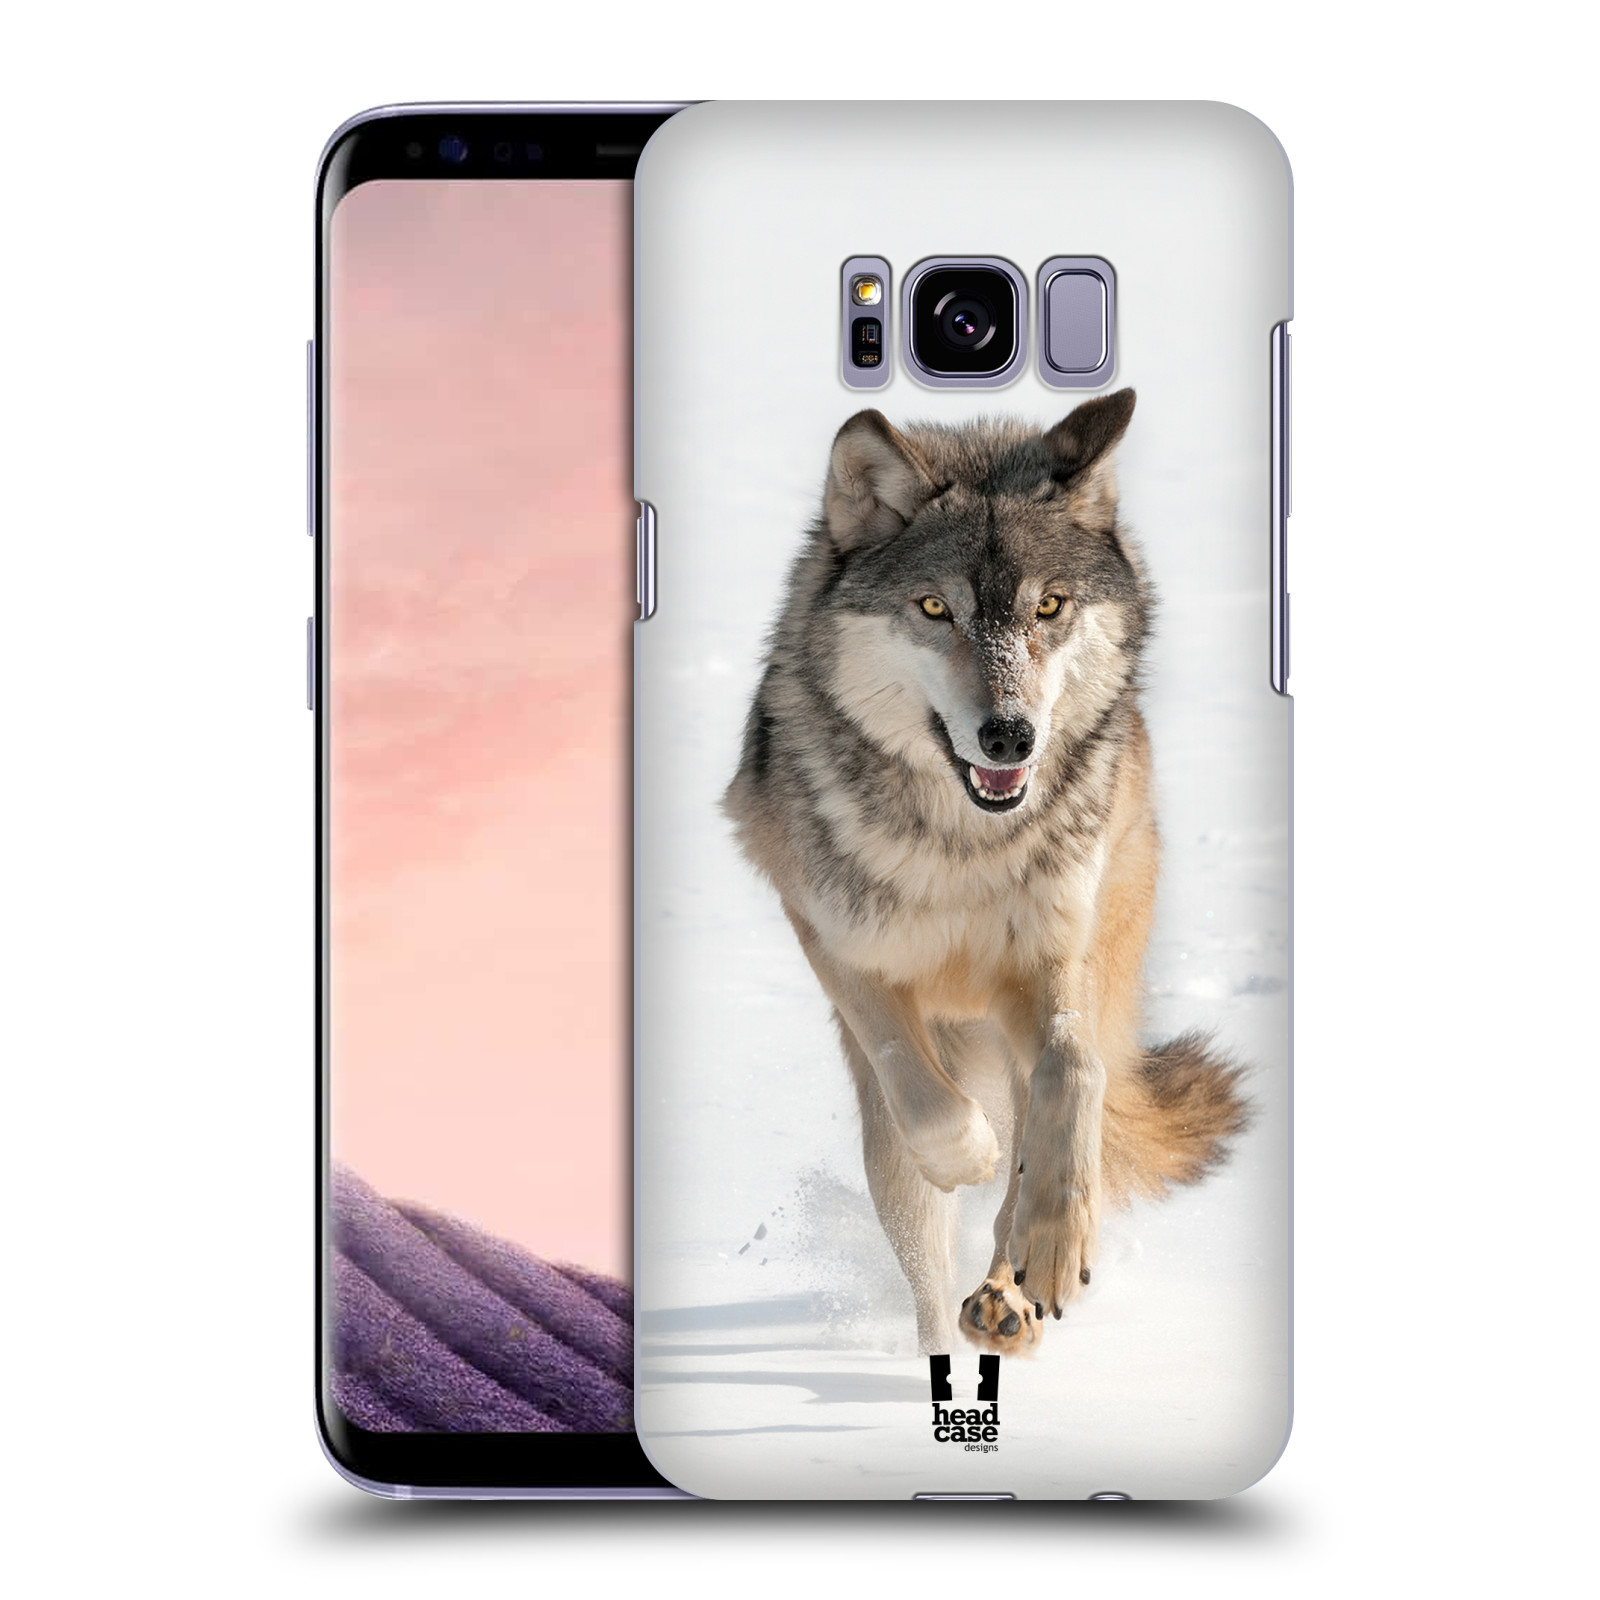 Zadní obal pro mobil Samsung Galaxy S8 PLUS - HEAD CASE - Svět zvířat divoký vlk